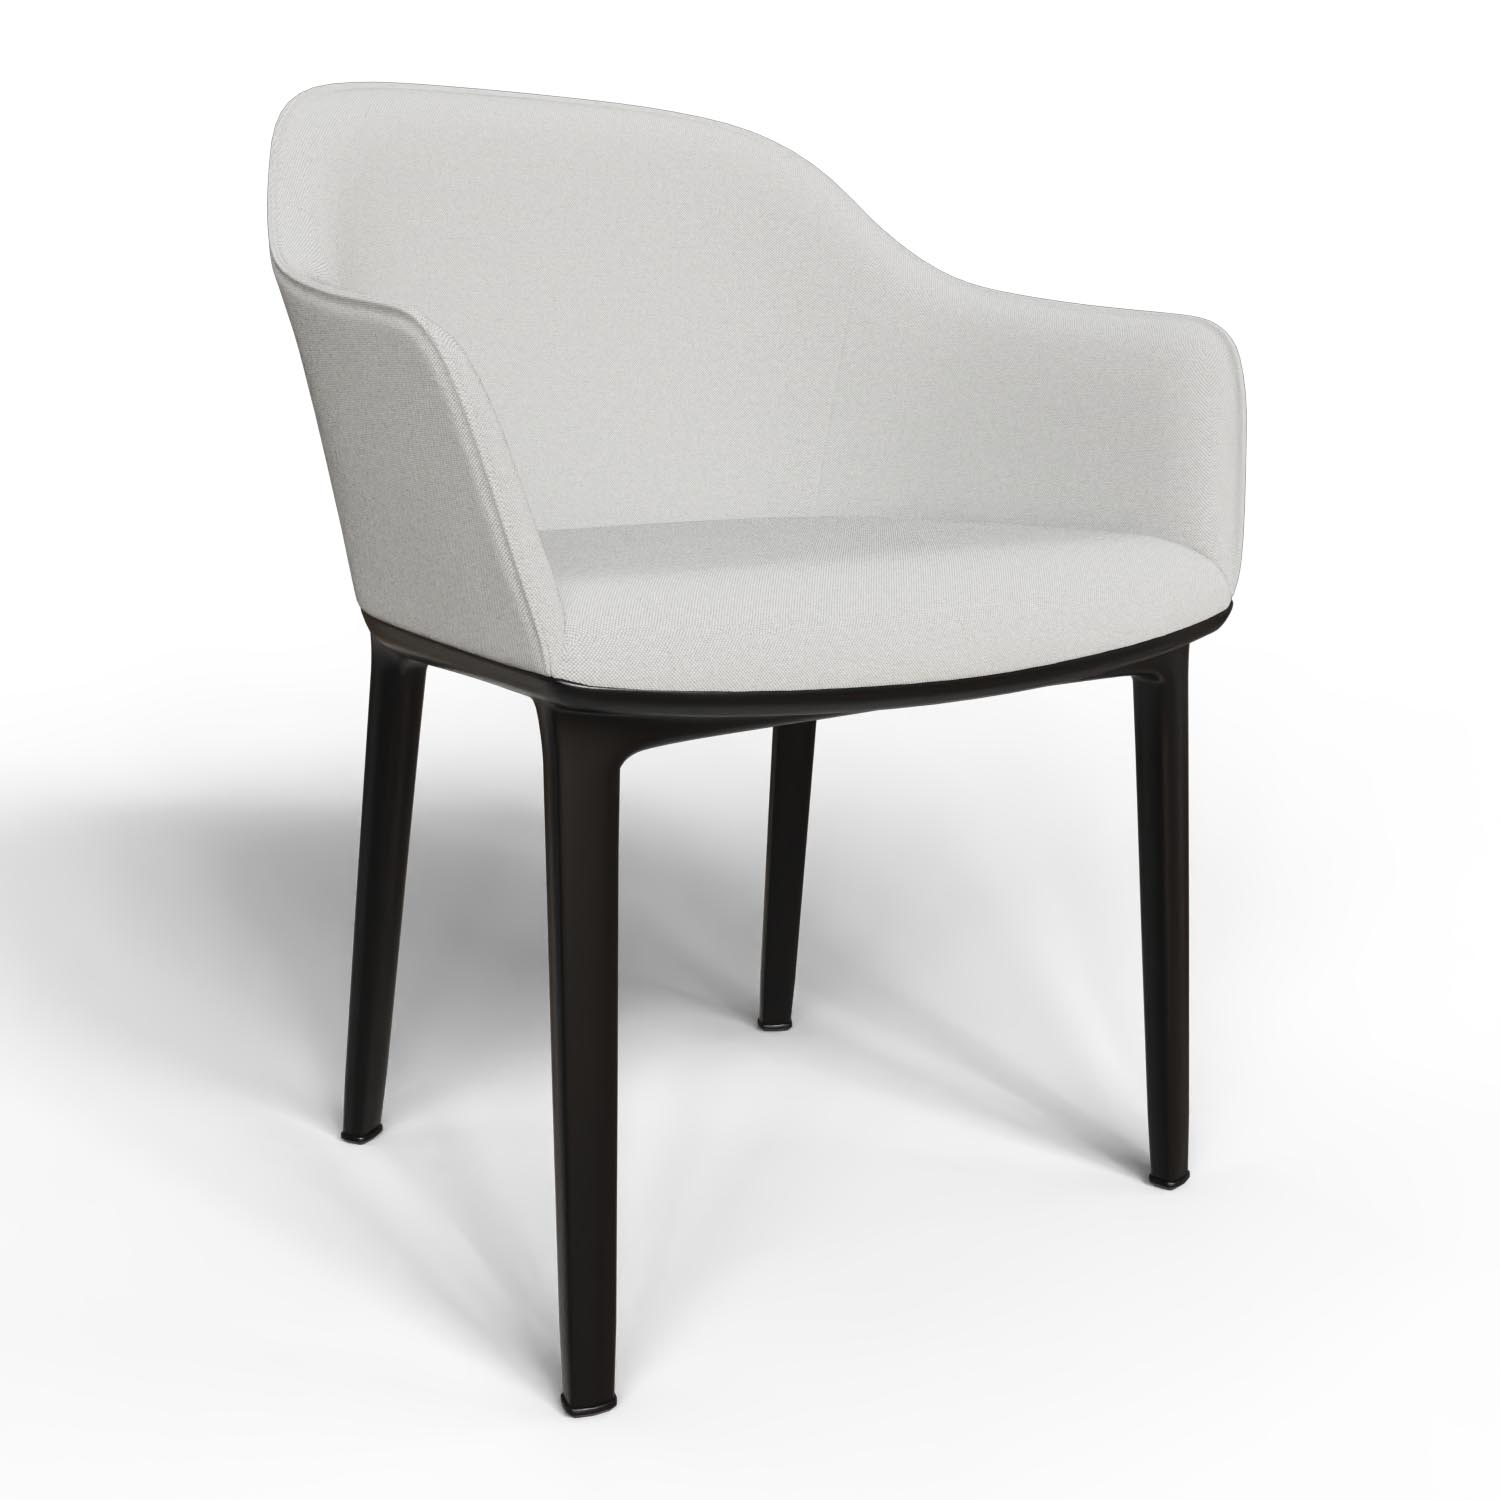 Stuhl Softshell Chair 42300600 in Cremeweiß / Sierragrau